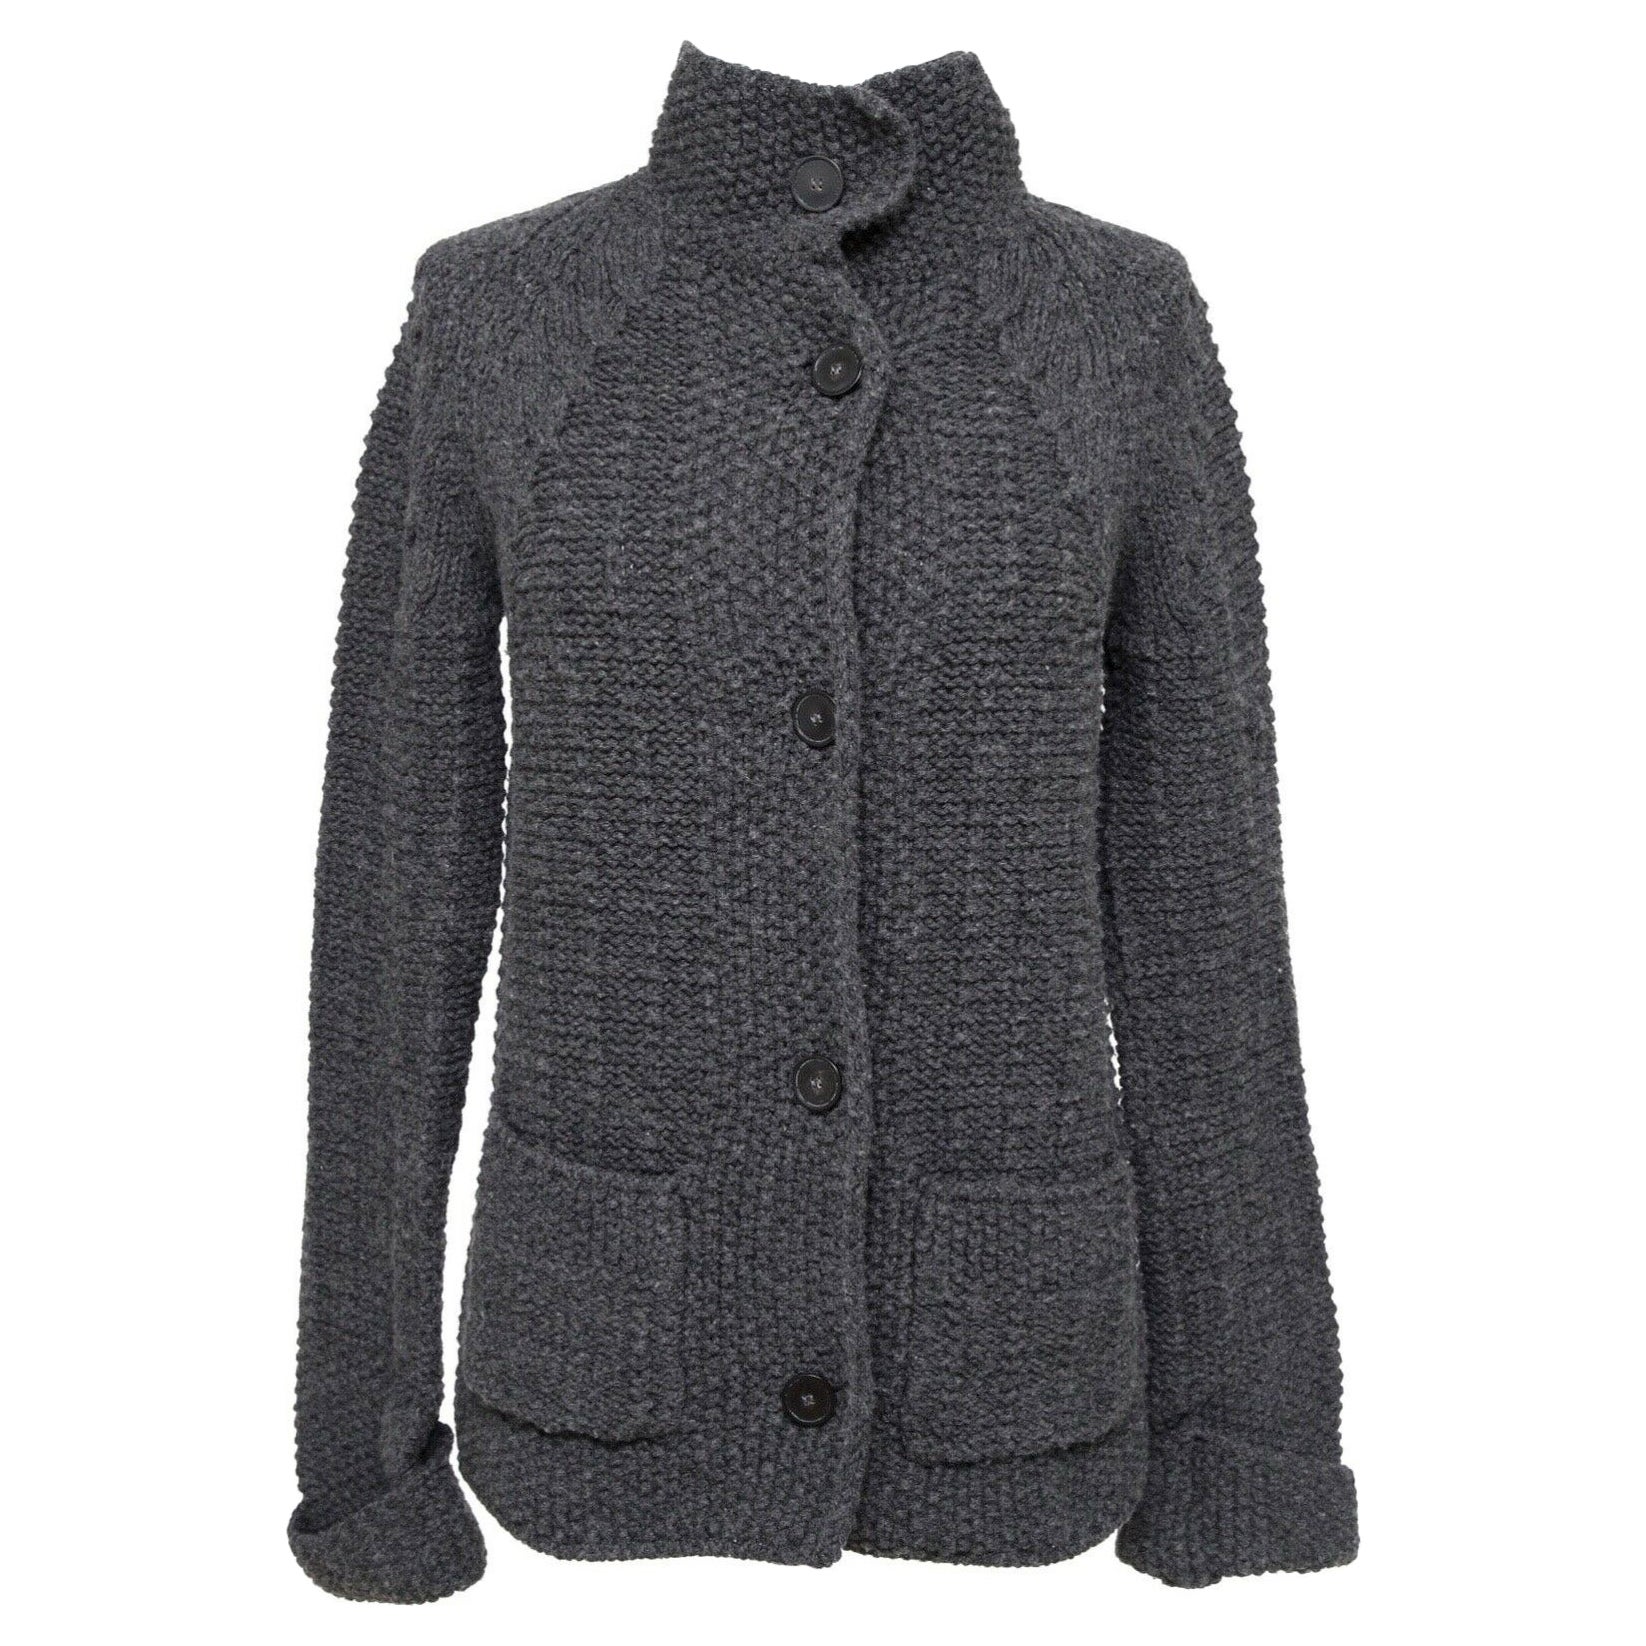 CHLOE Strickjacke Pulloverjacke mit langen Ärmeln CHARCOAL GREY Gr. XS 2011 im Angebot